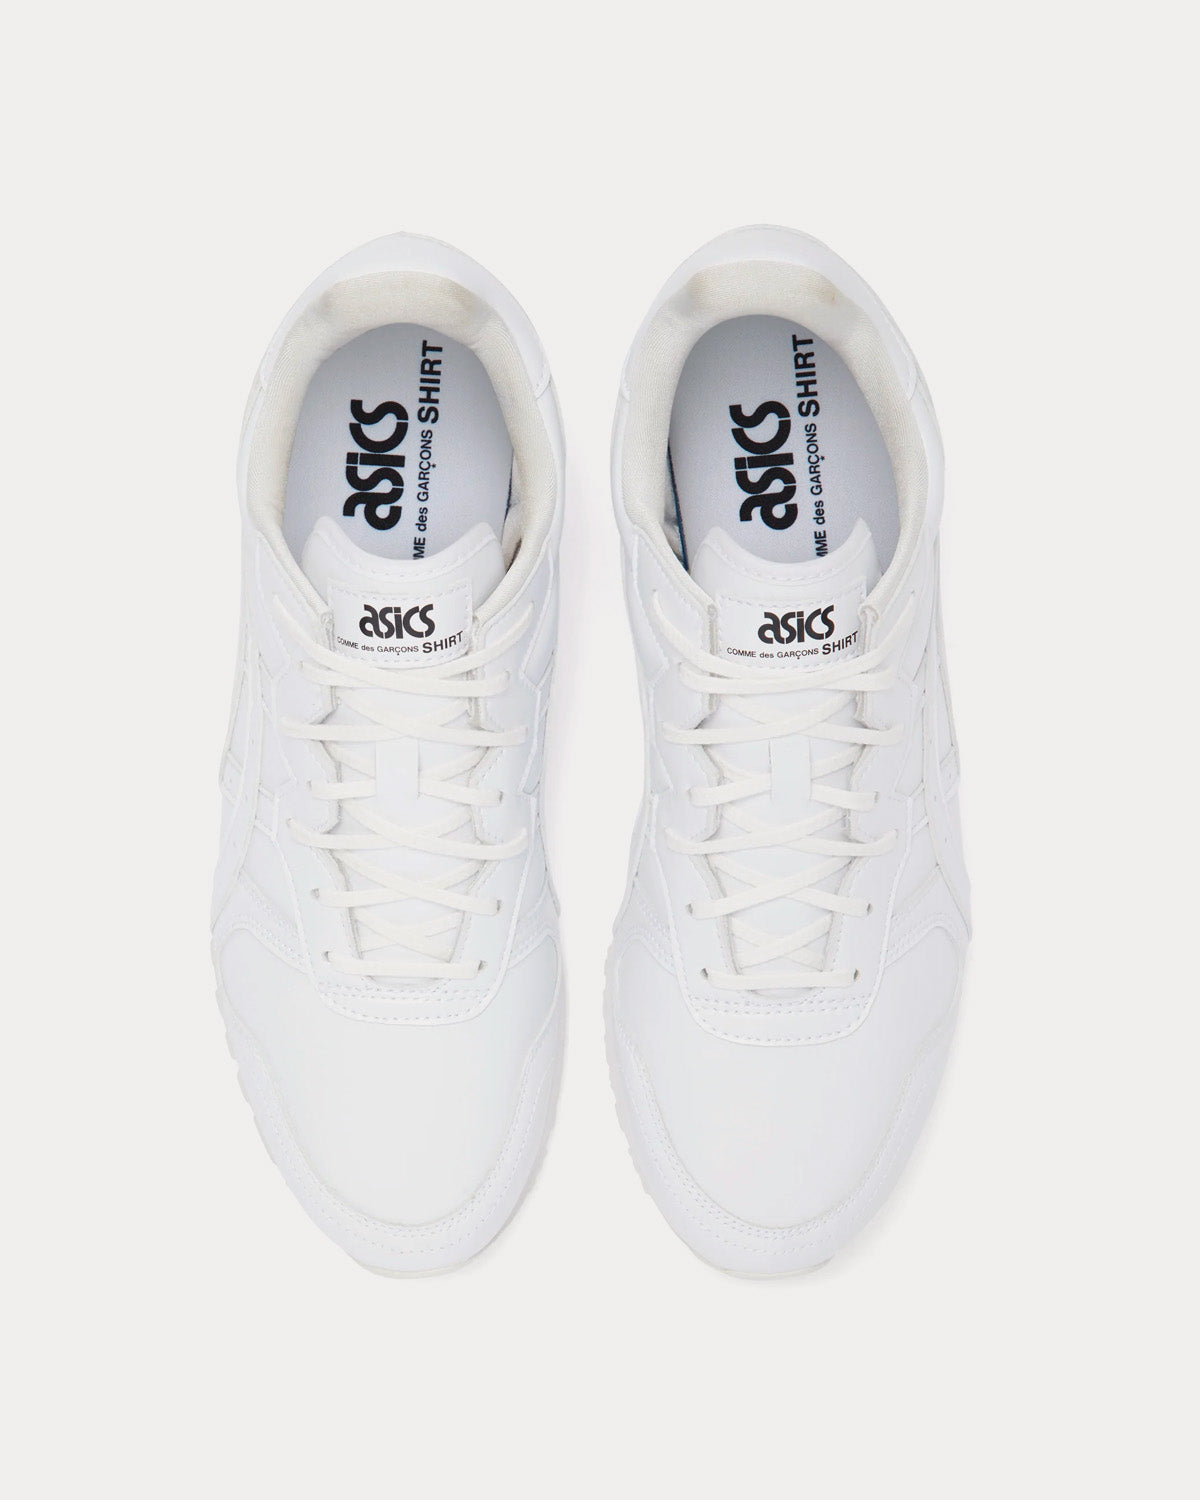 Asics x CDG Shirt - OC Runner White Low Top Sneakers